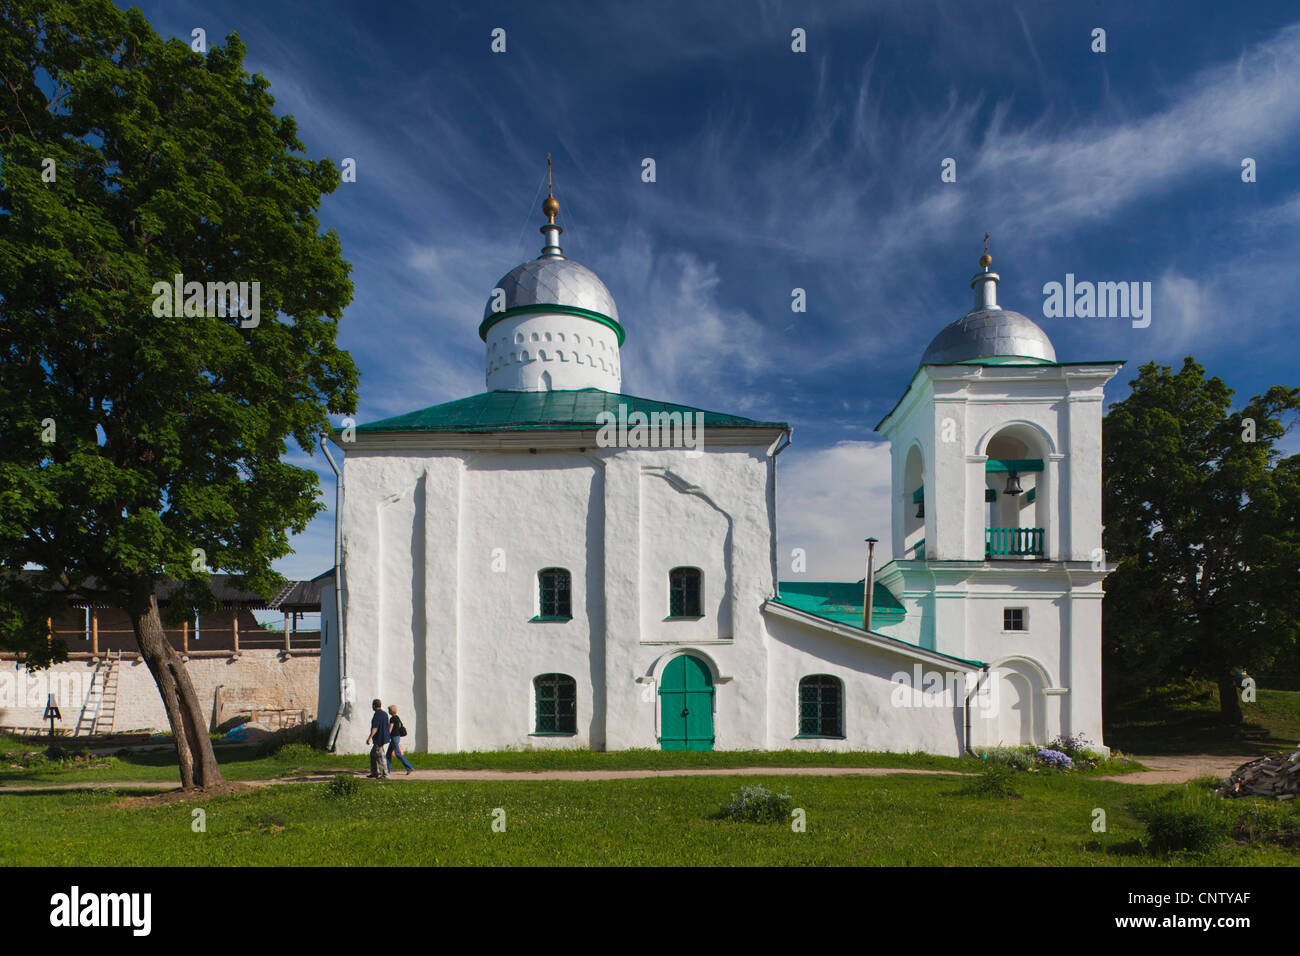 La Russie, Pskovskaya Oblast, Stary Izborsk, ruines de la plus vieille forteresse de pierre en Russie, l'église de Saint Nicolas Banque D'Images